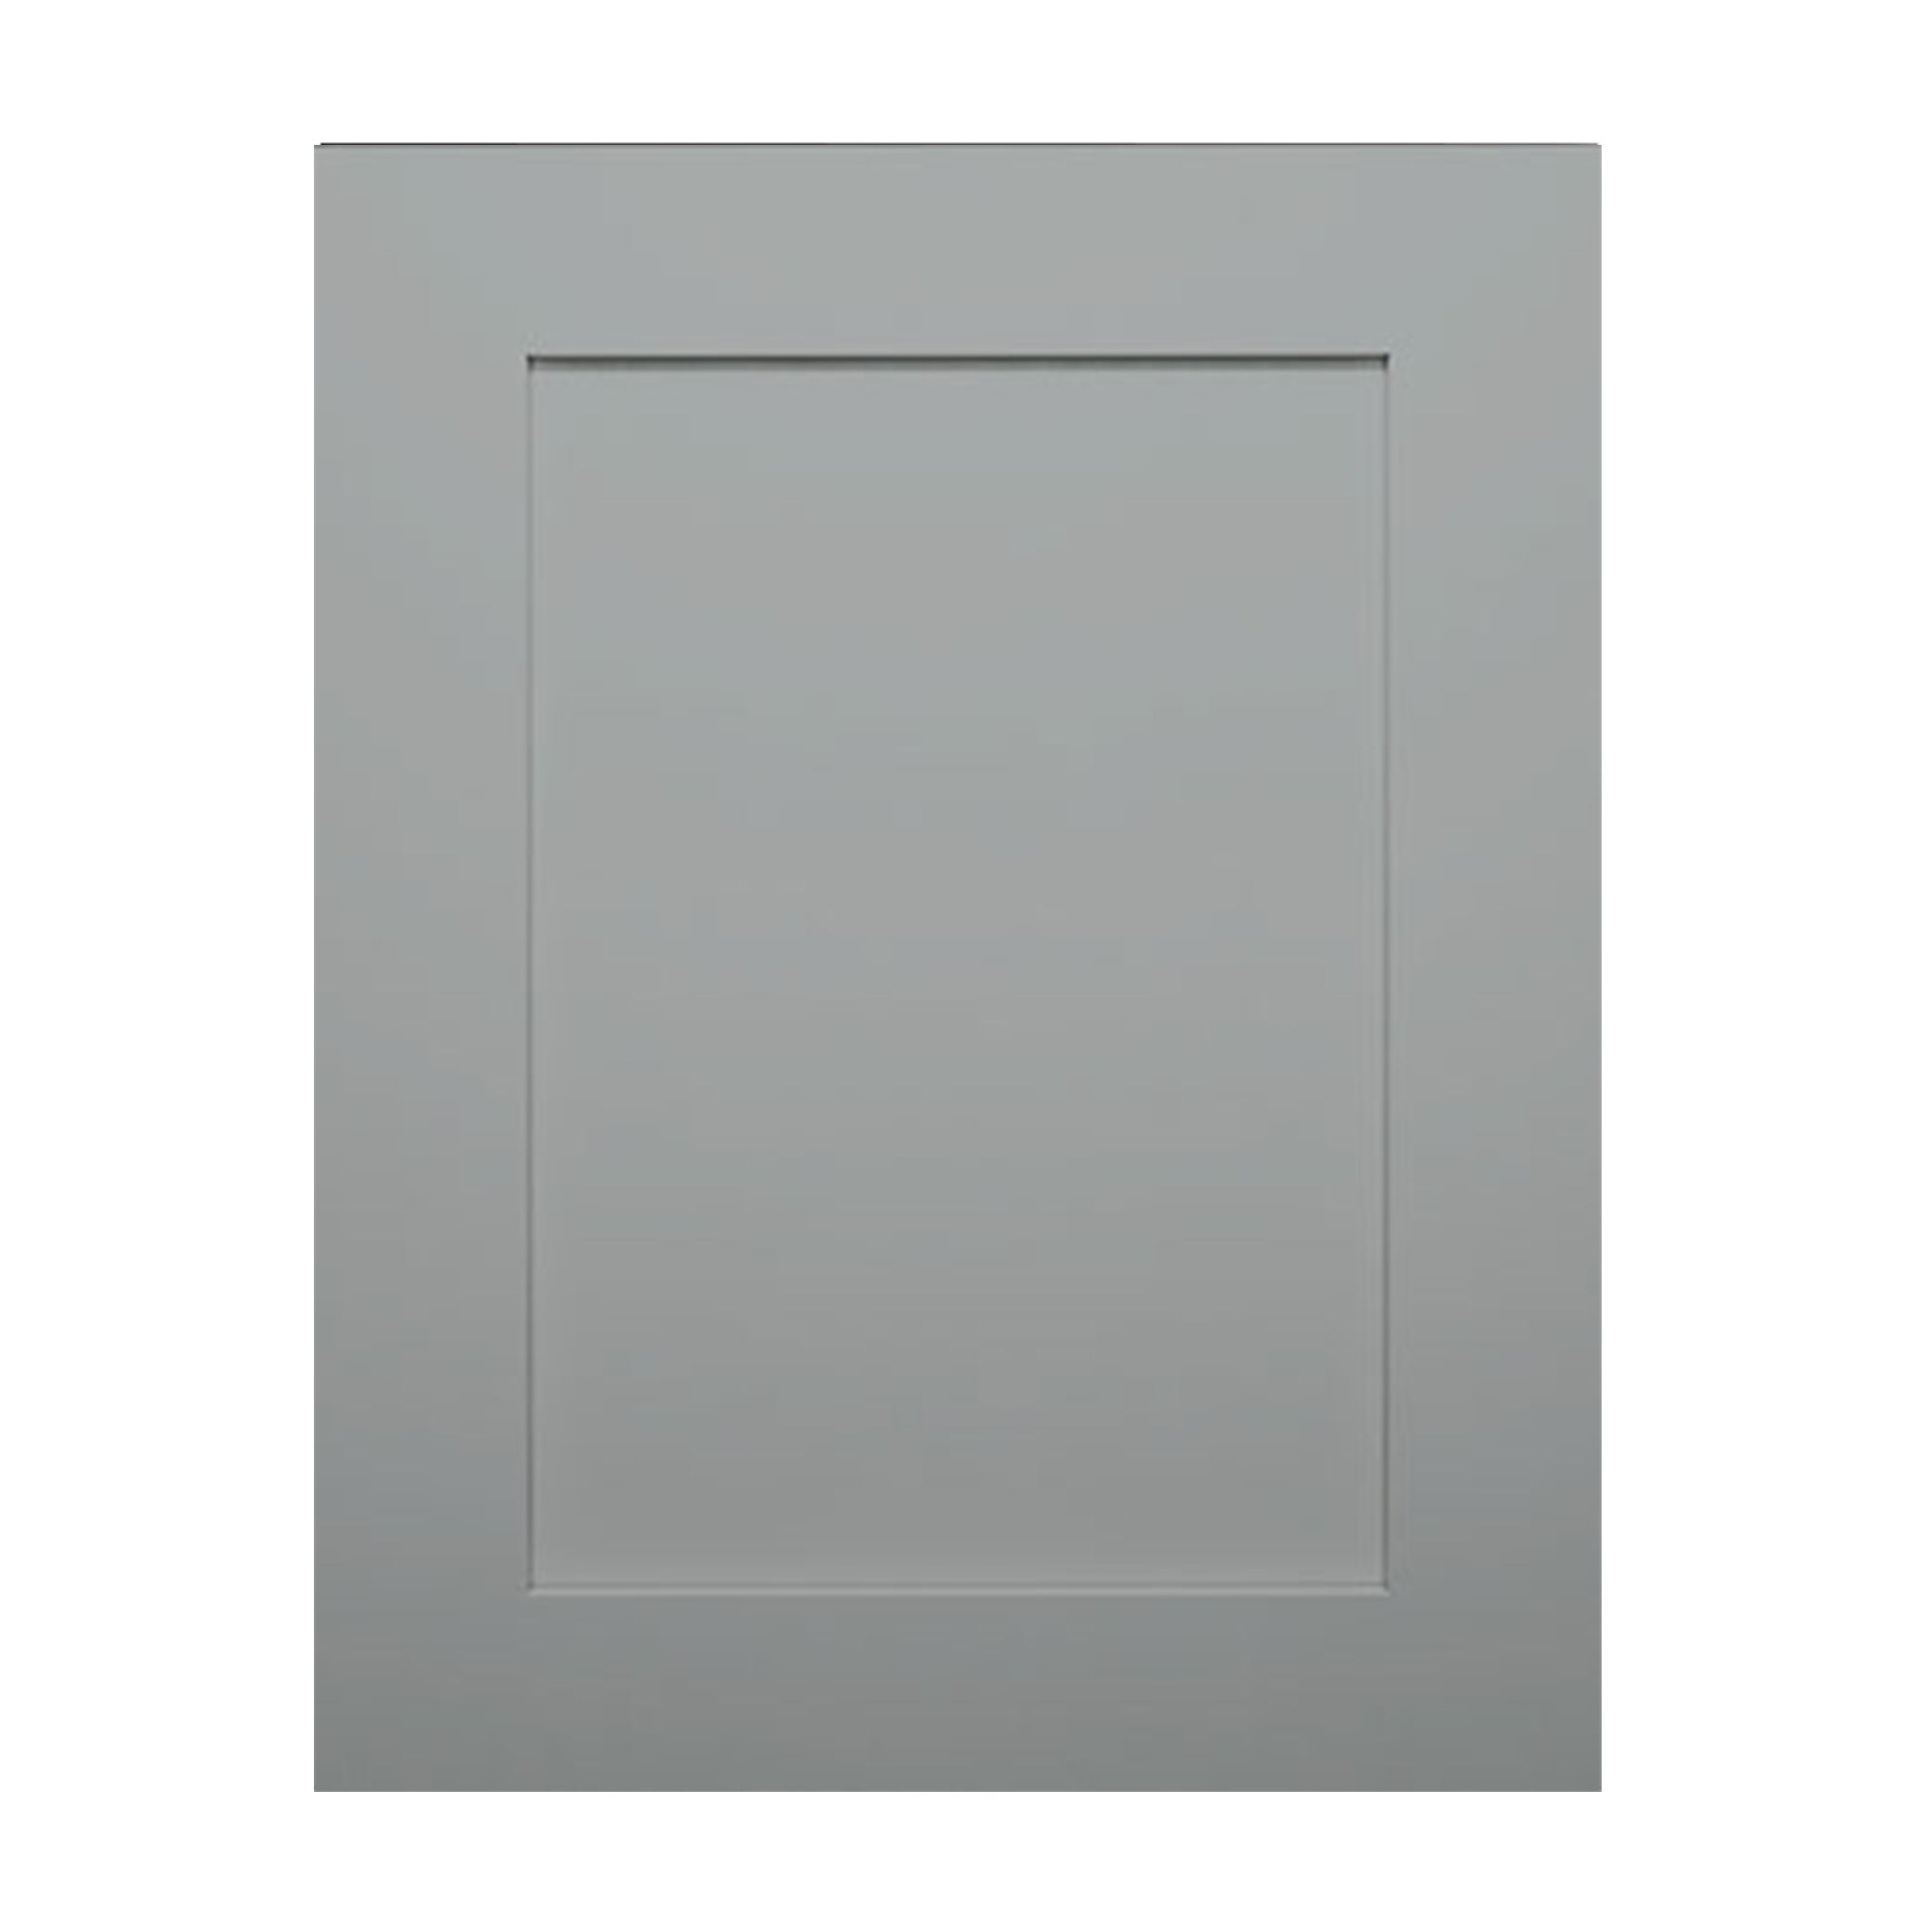 Kitchen Cabinet - Shaker Cabinet Sample Door - Delight Grey Shaker